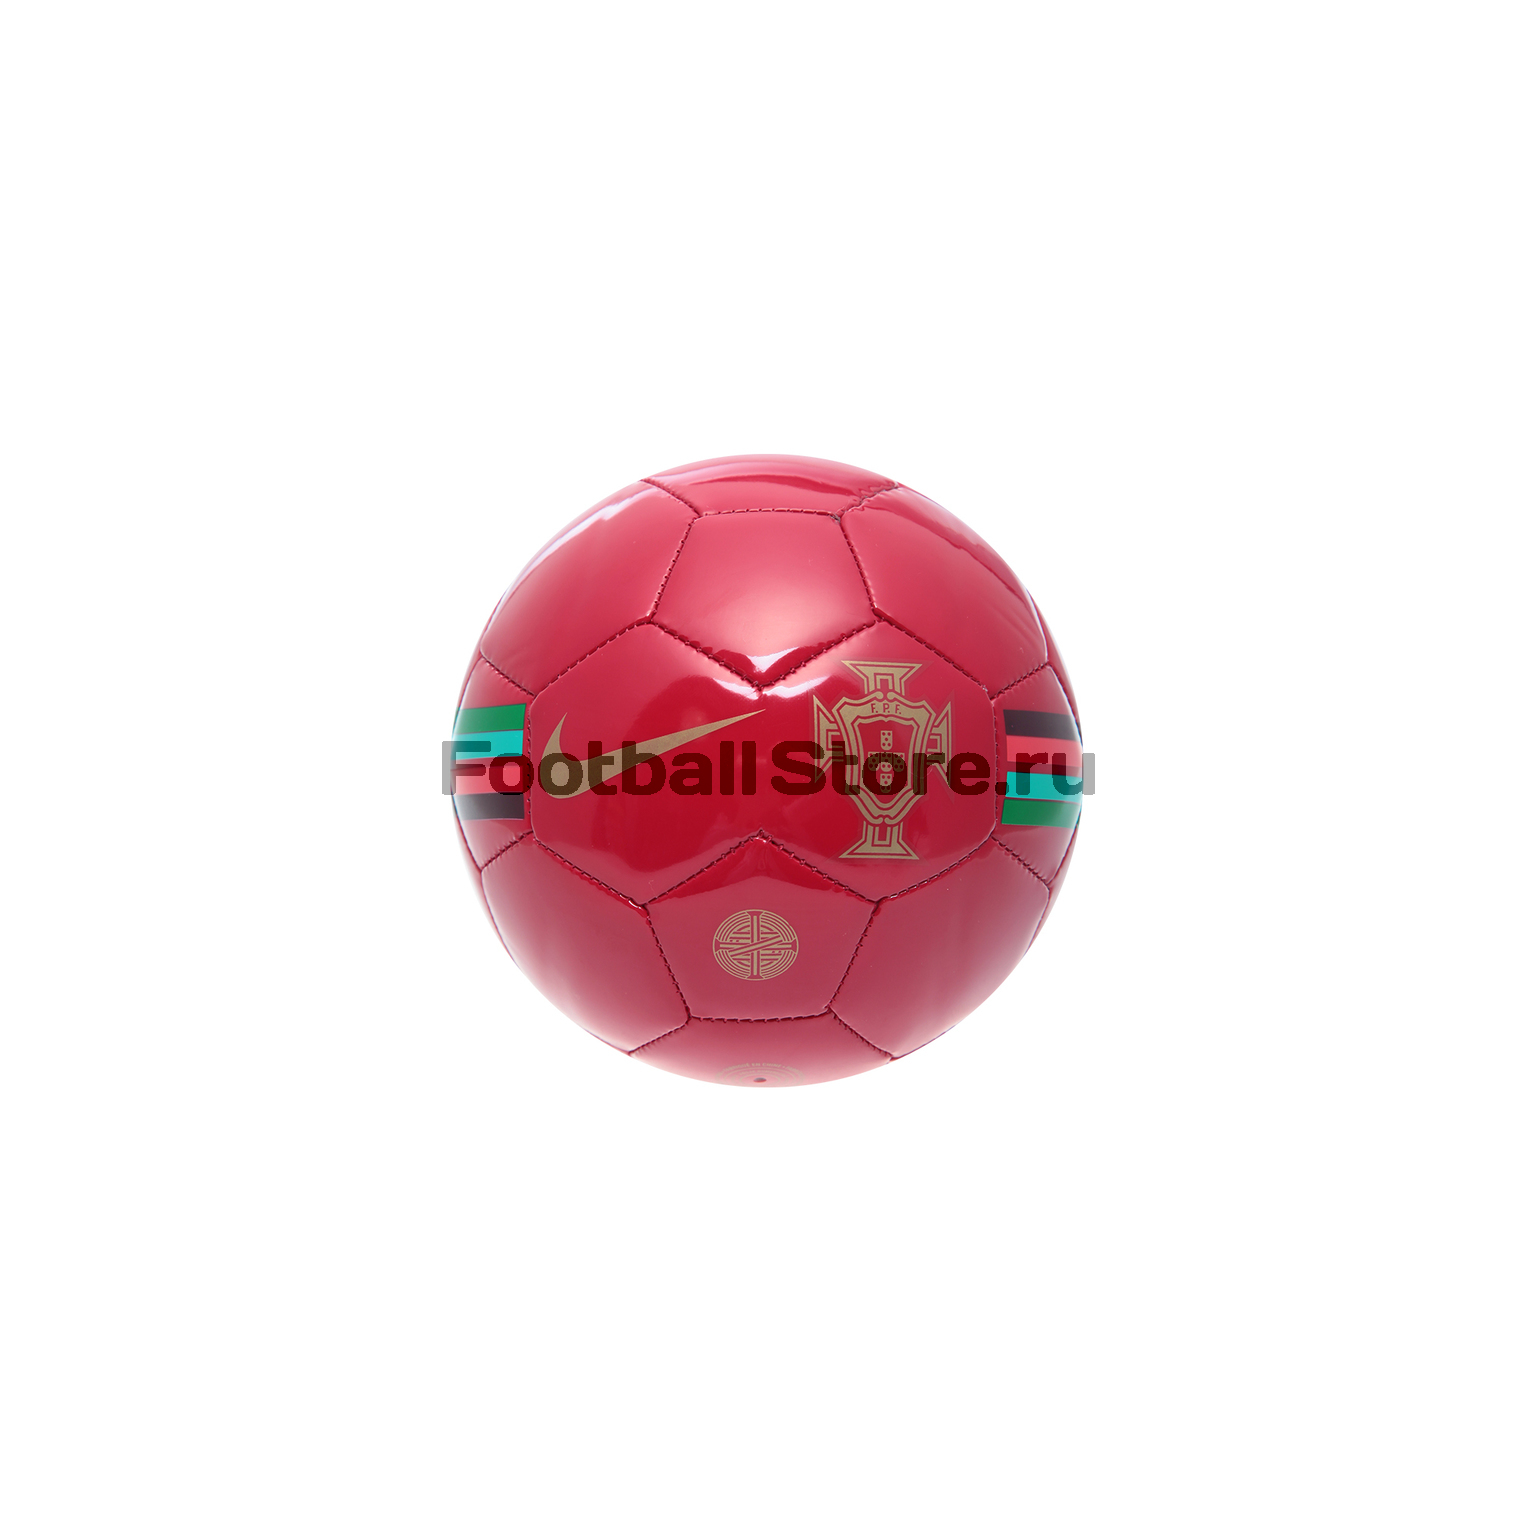 Футбольный сувенирный мяч Nike сб. Португалии SC3220-687